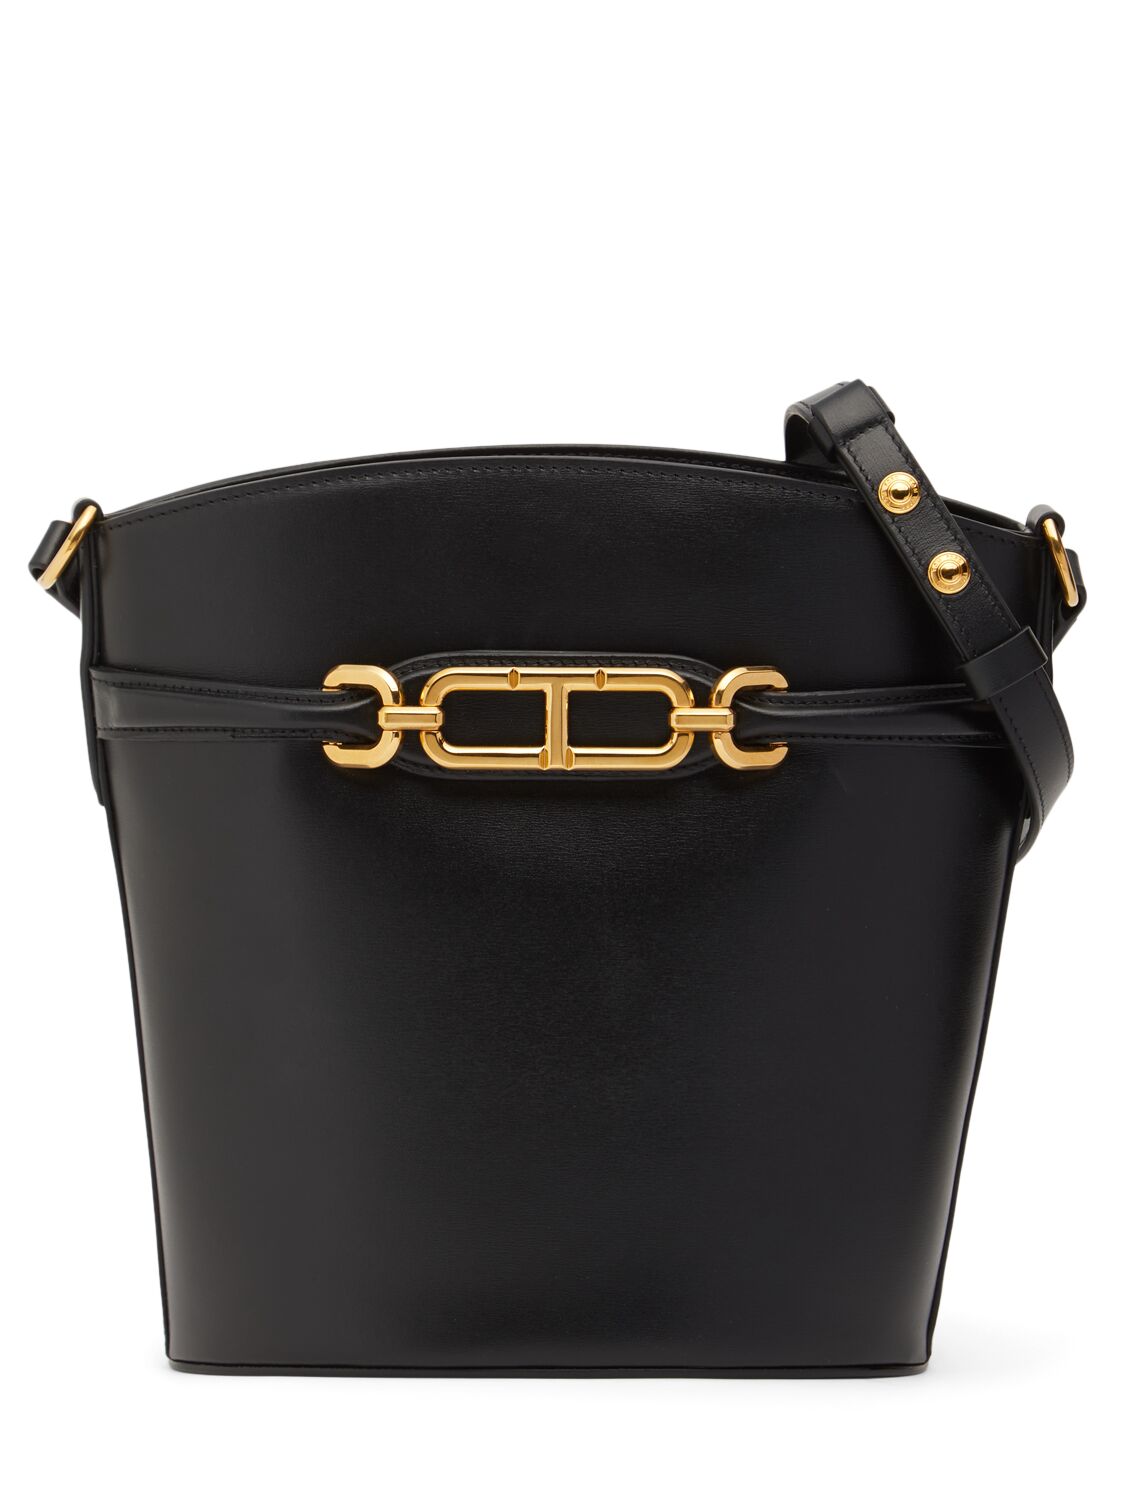 Medium Whitney Box Leather Bucket Bag